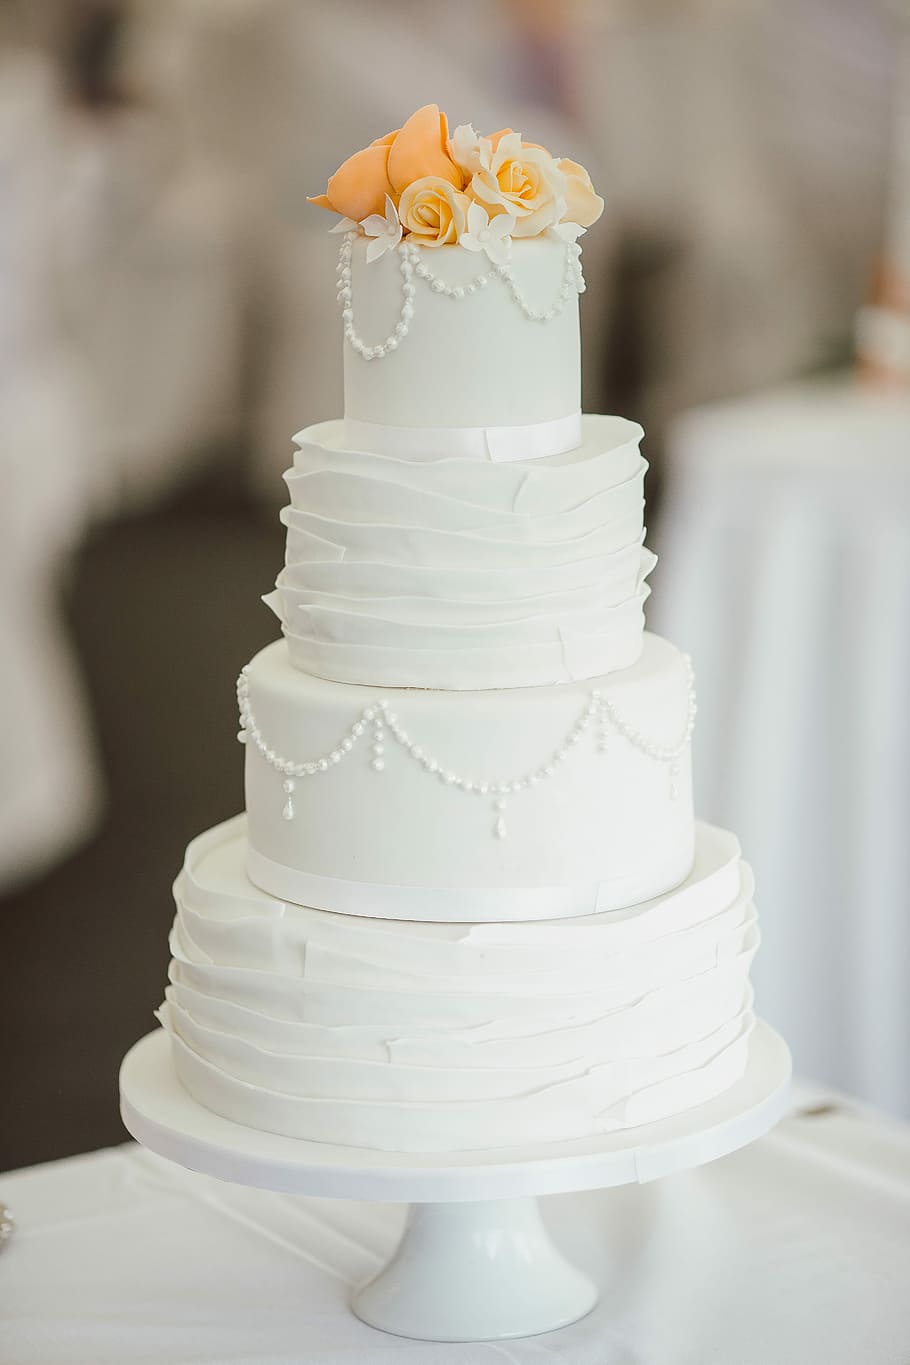 Bolo de 4 e 4 camadas, mesa, bolo de casamento, bolos de casamento, comida, decoração, branco, casamento, celebração, festa